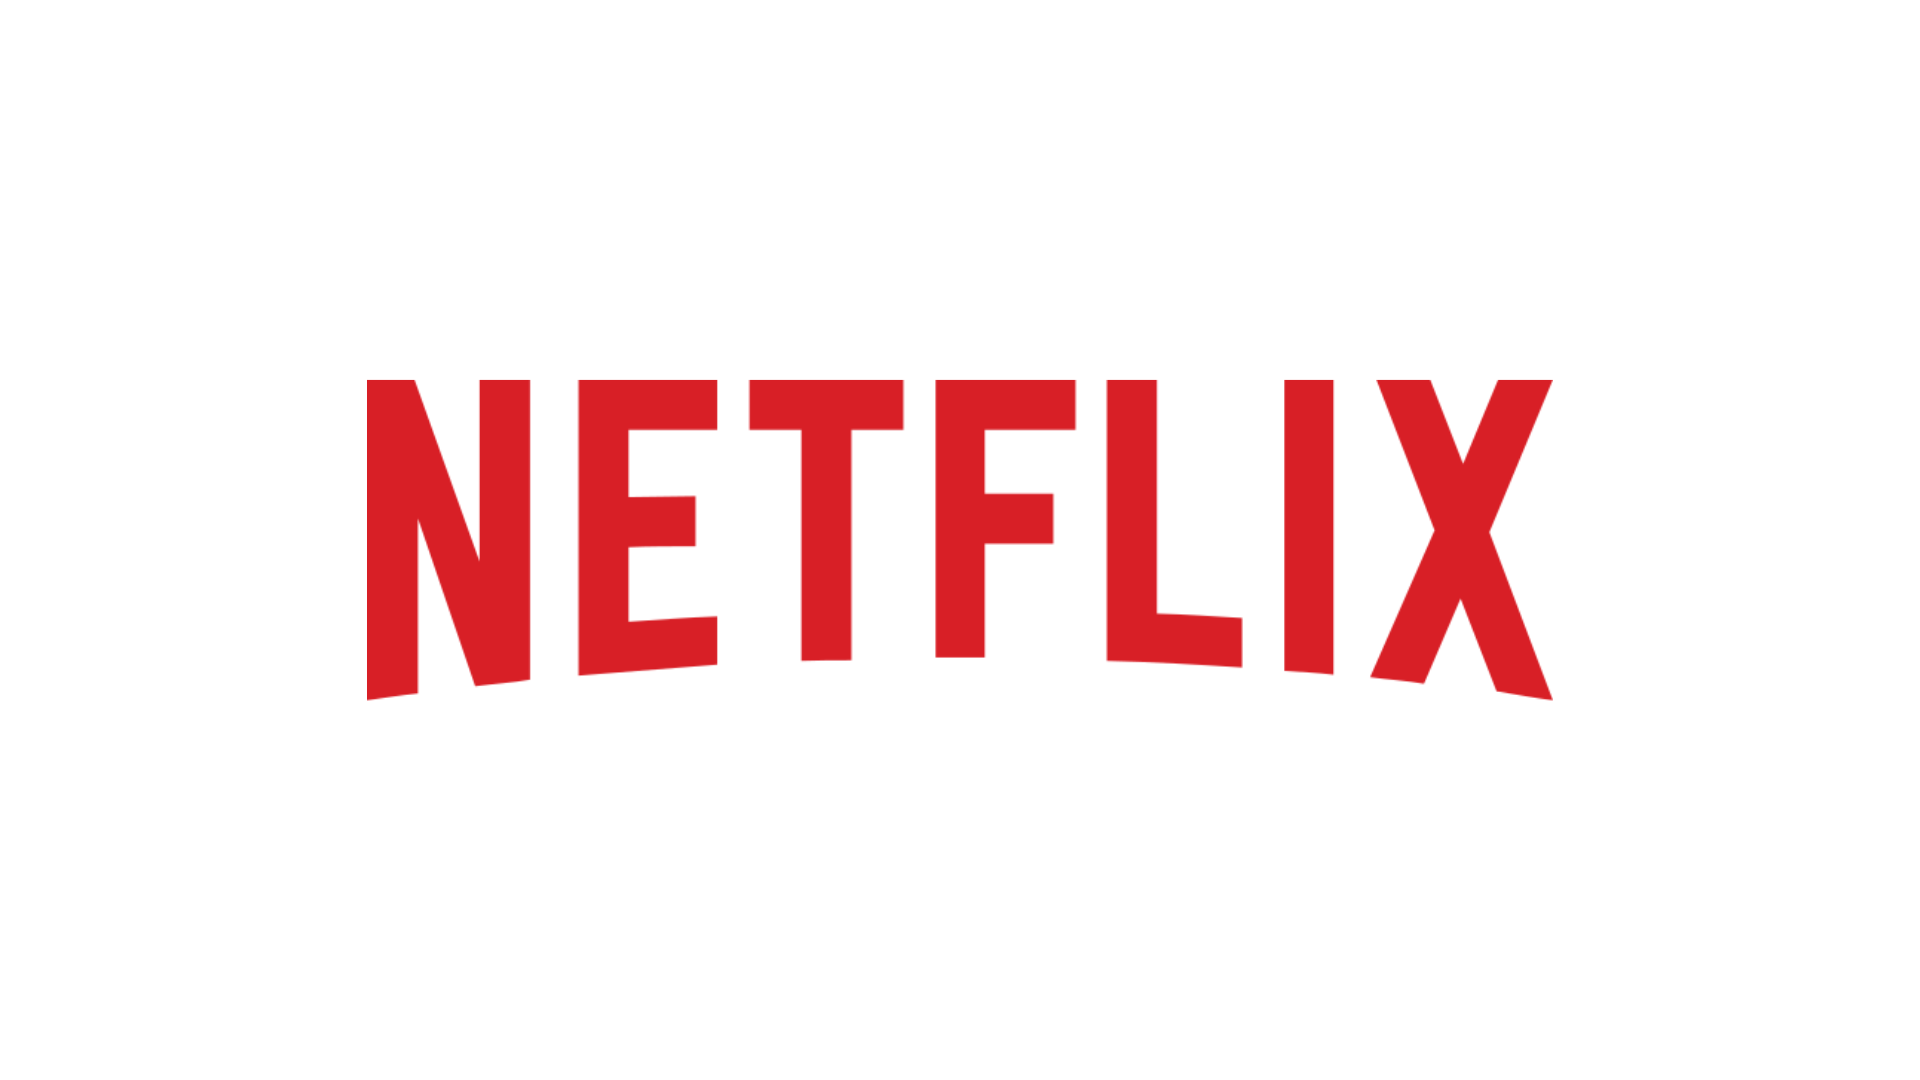 Netflix-serien "Barracuda Queens" kommer tillbaka med en efterlängtad andra säsong.